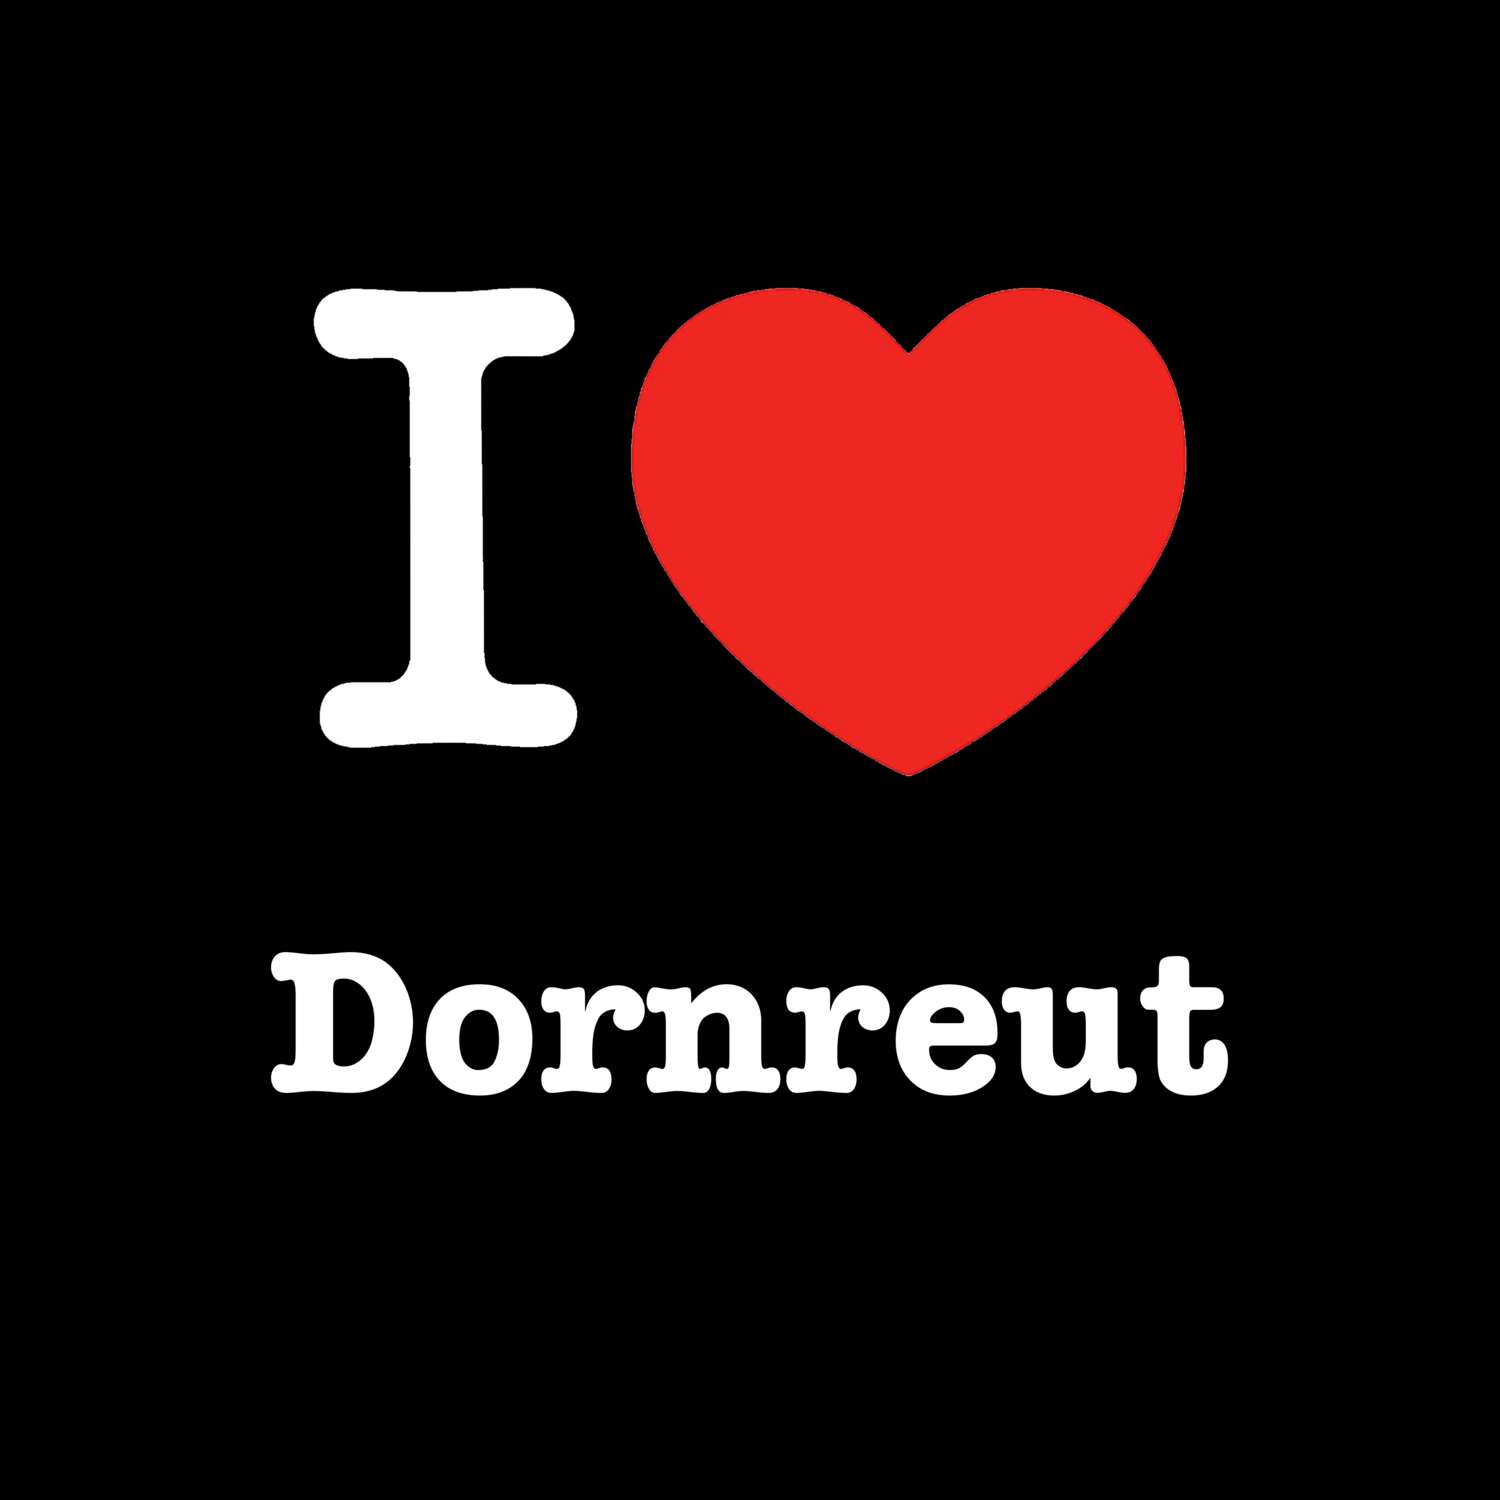 Dornreut T-Shirt »I love«